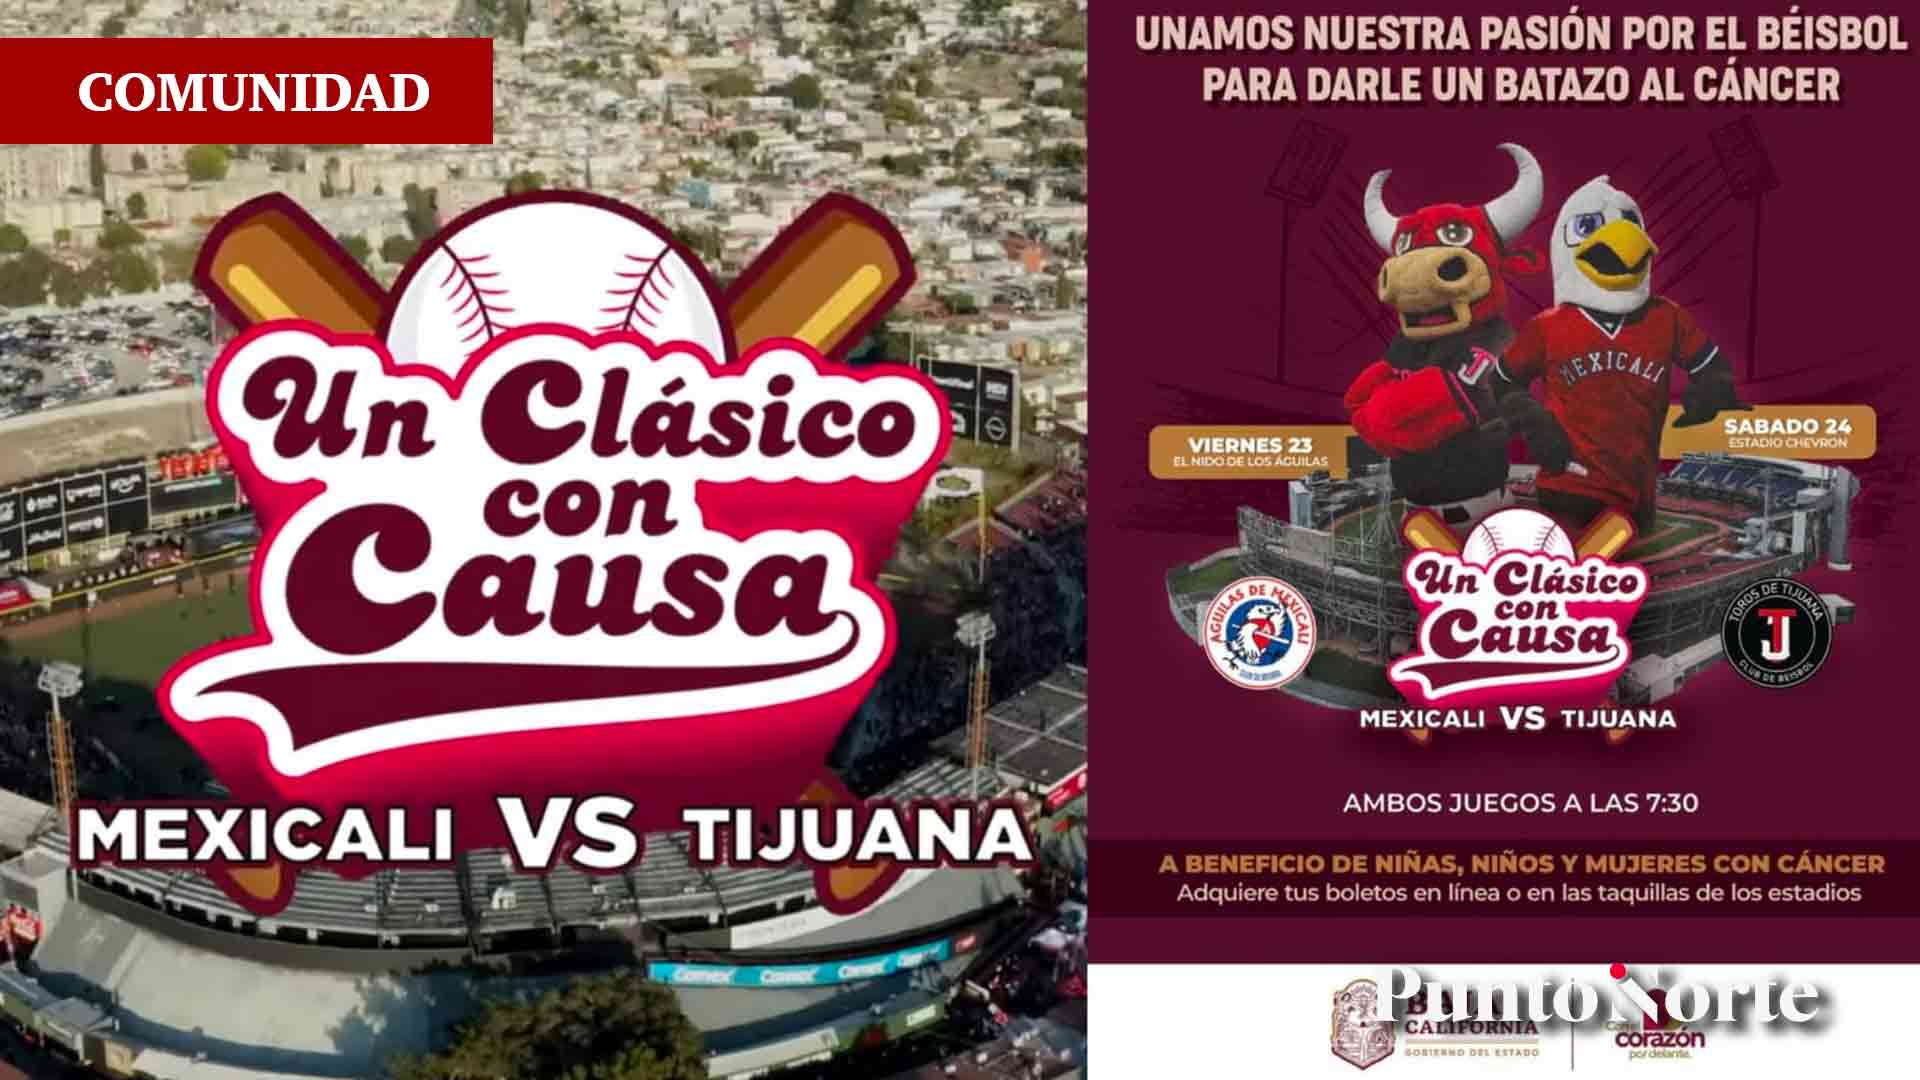 Águilas de Mexicali vs Toros de Tijuana se enfrentan tras 32 años de  rivalidad, en beneficio de niños y mujeres con cáncer - Punto Norte